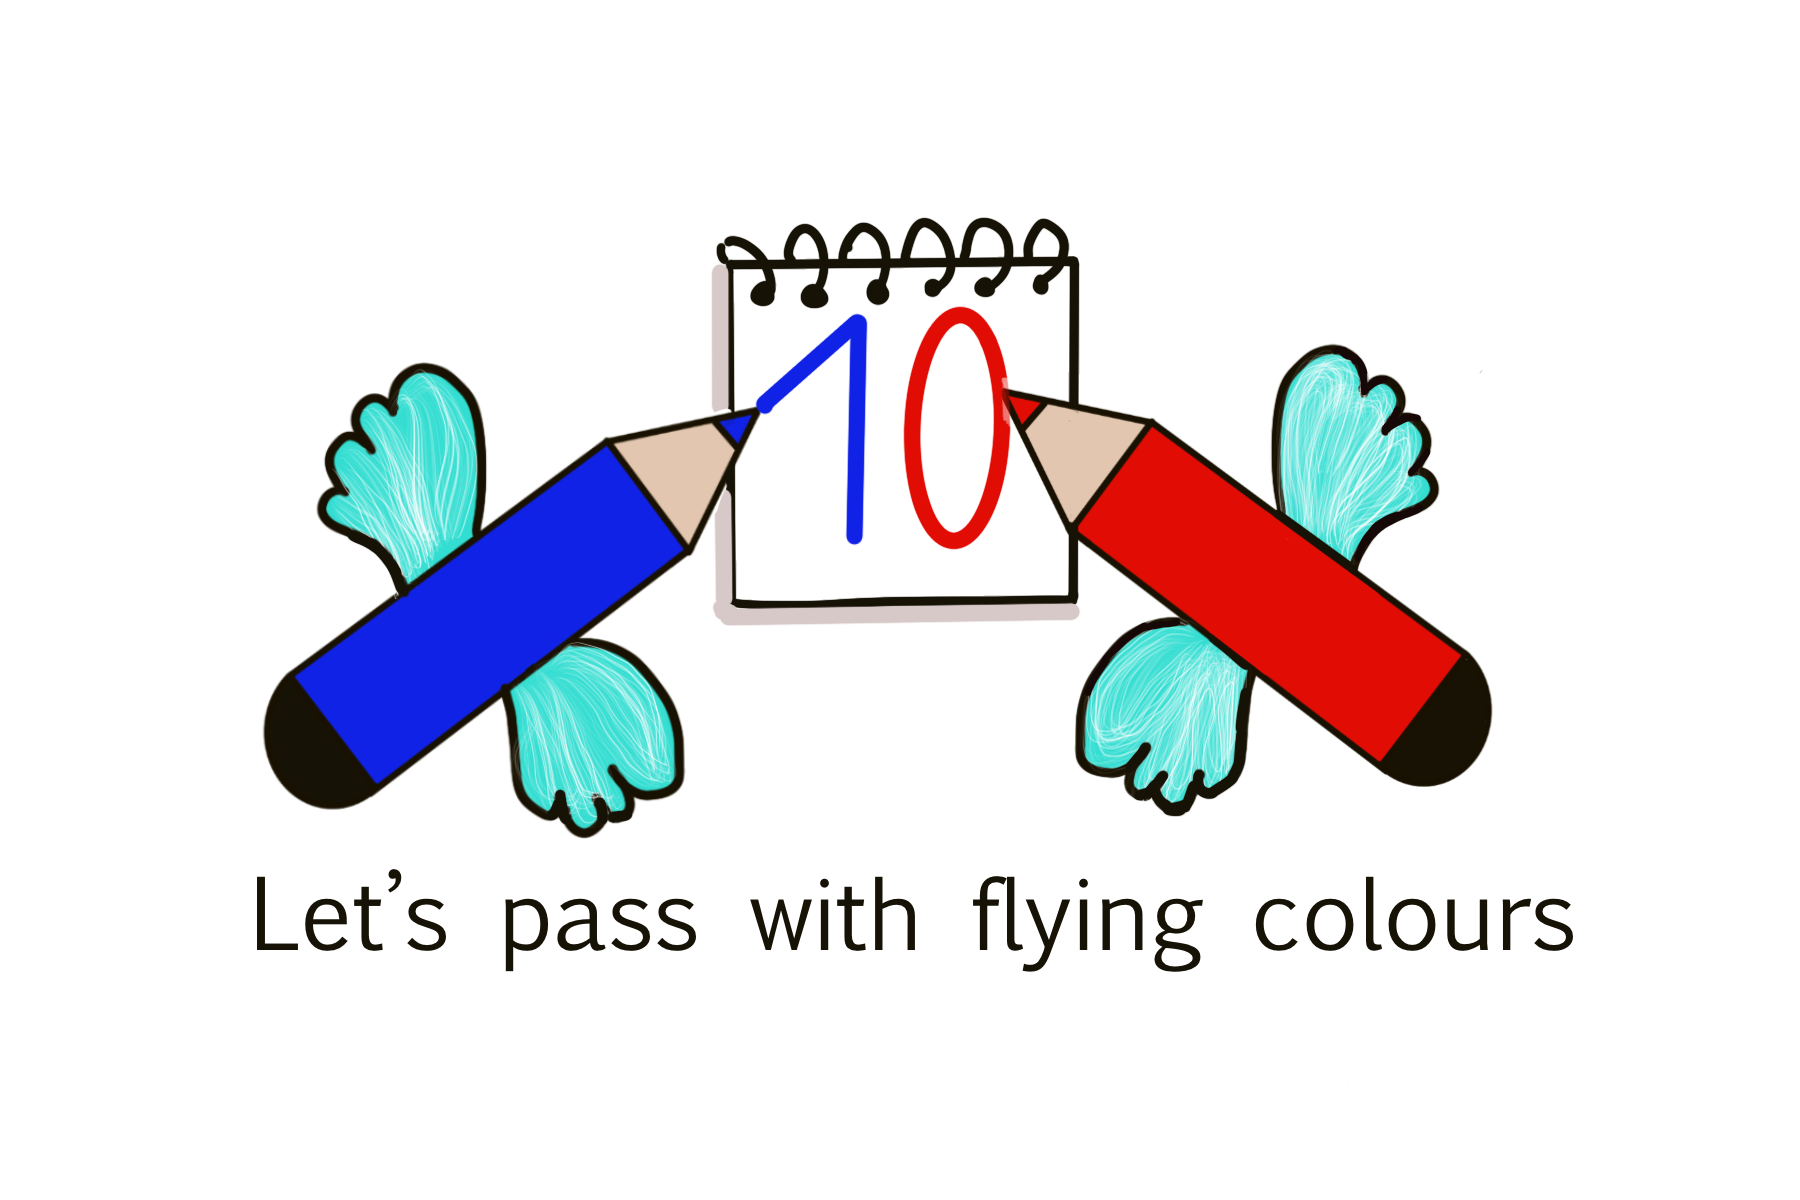 La imagen muestra dos lápices con alas dibujando un número 10.